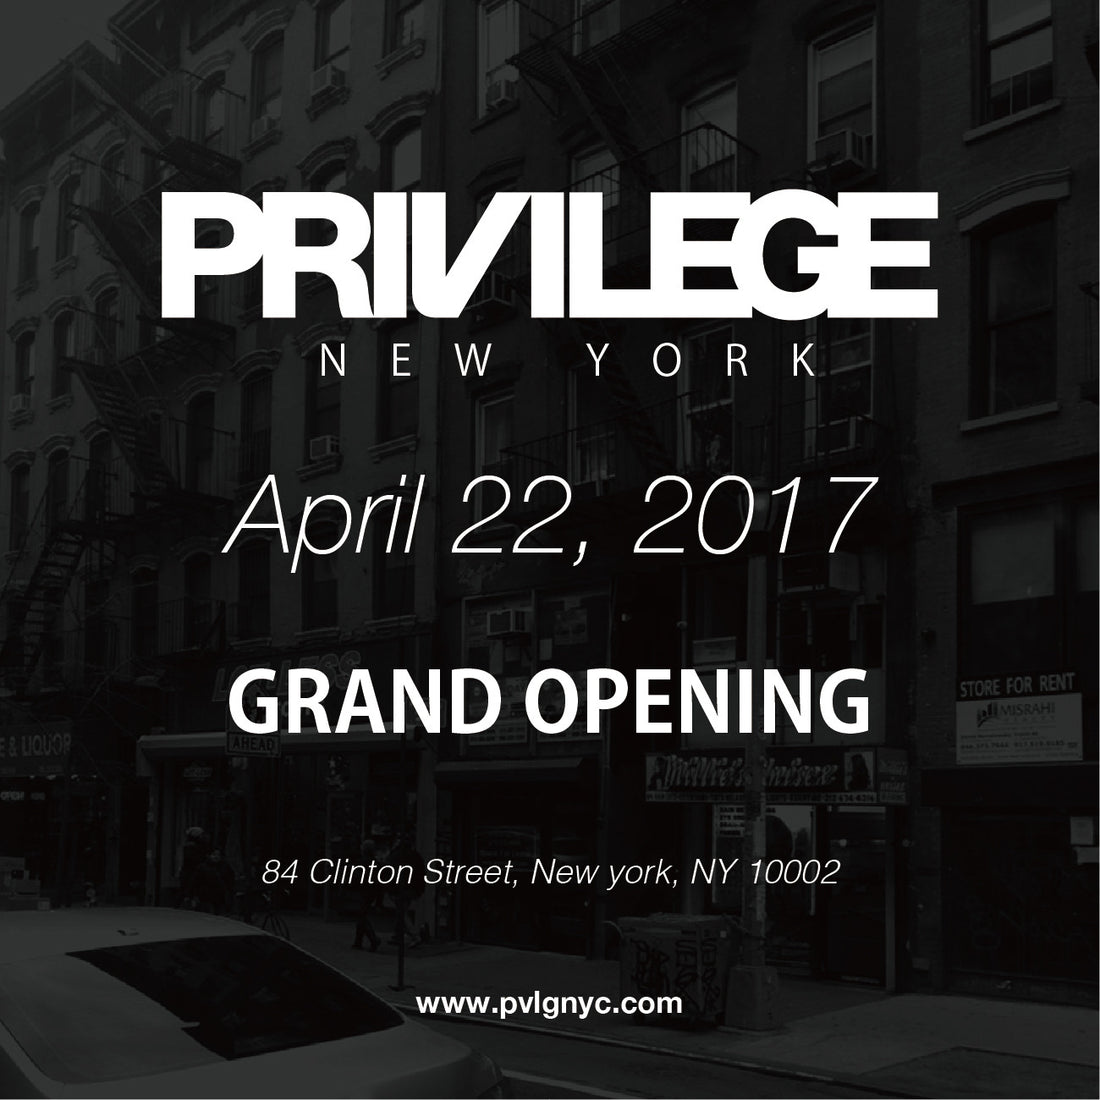 Privilege New York Grand Opening